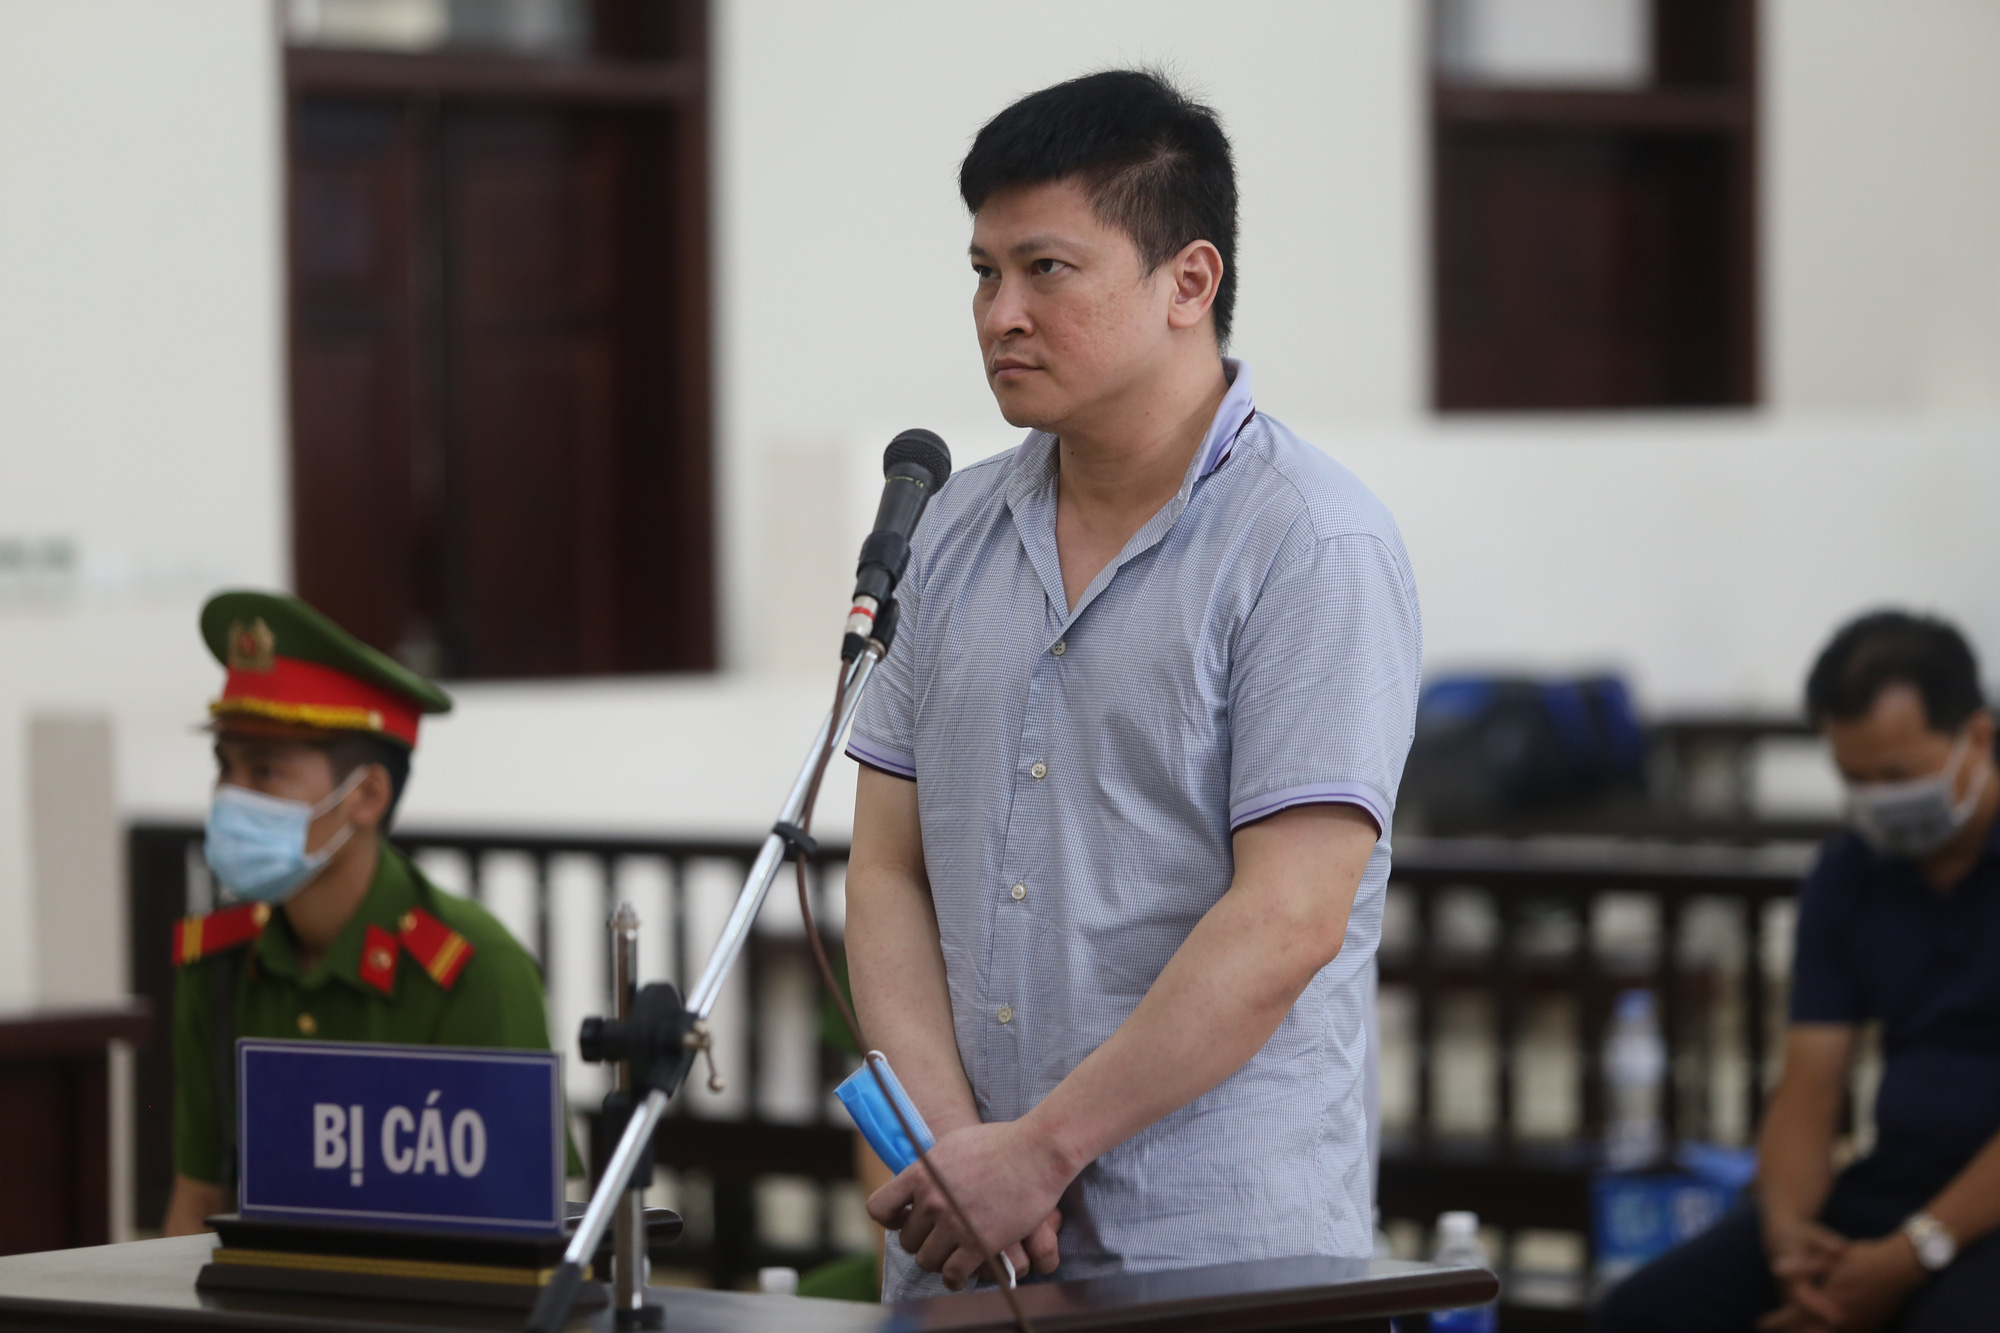 Bản án 10 năm tù của ông Nguyễn Nhật Cảm chính thức có hiệu lực - Ảnh 3.